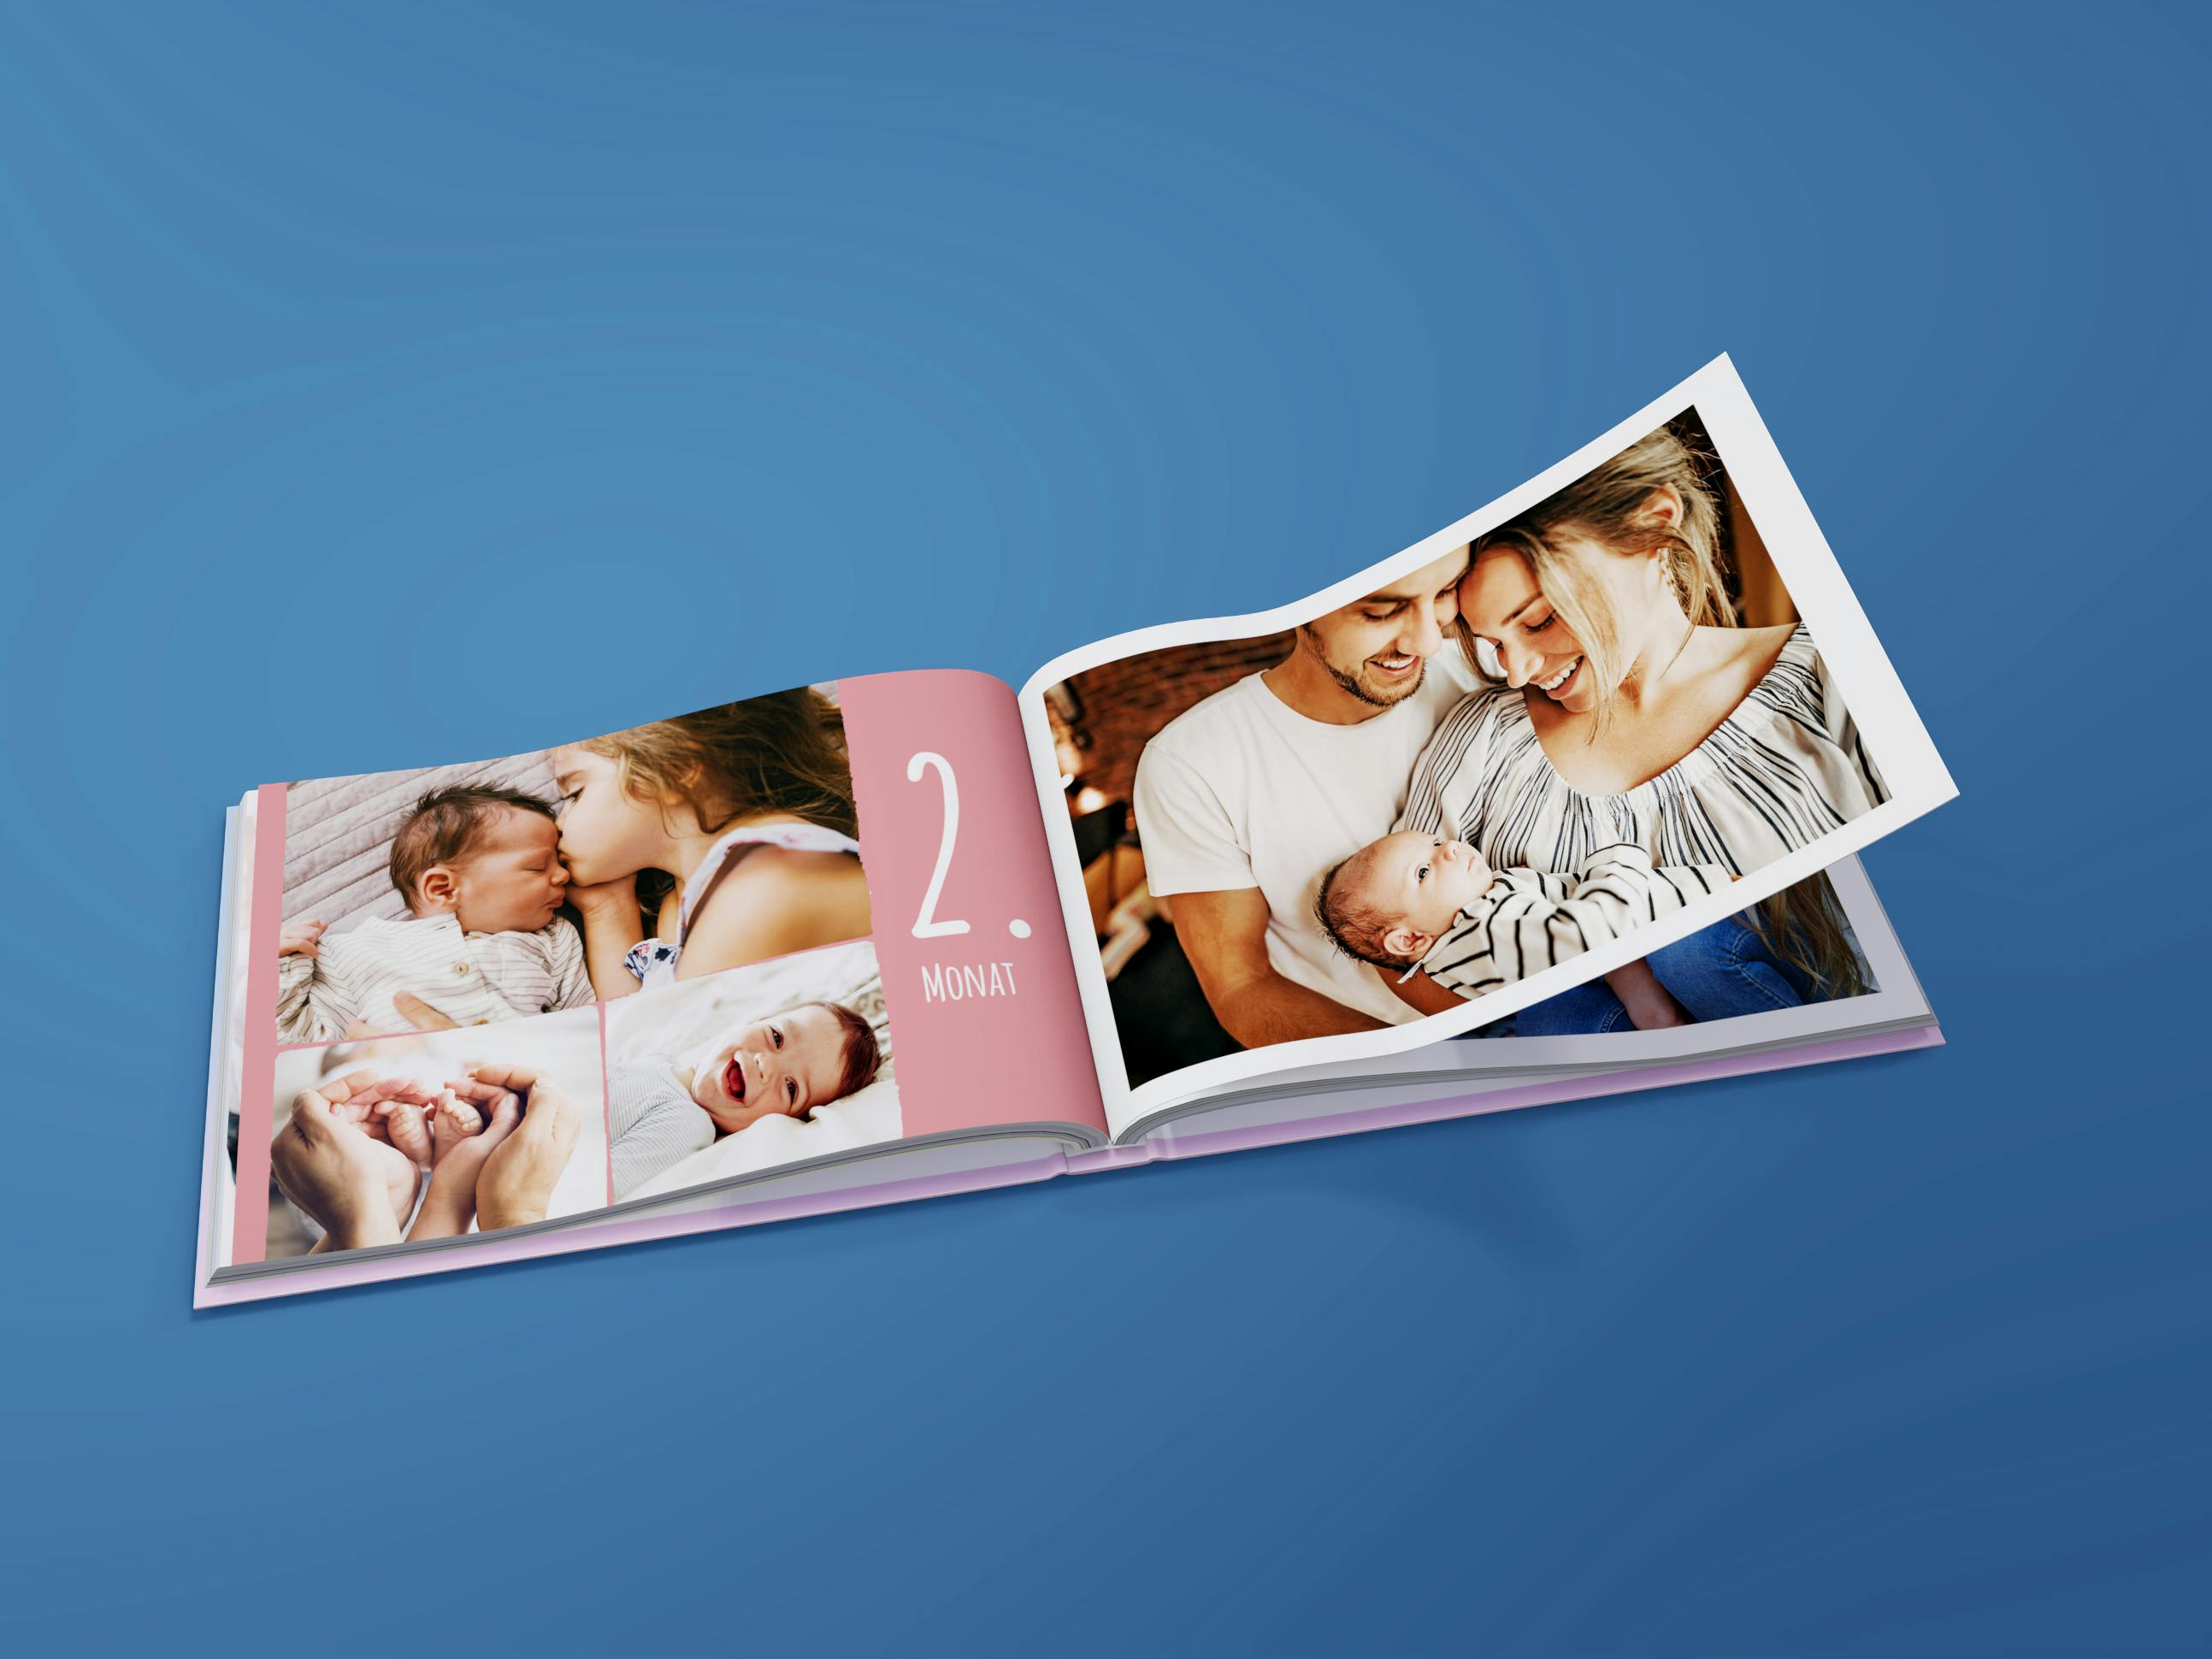 Aufgeschlagenes Fotobuch im Querformat mit Babyfotos auf dunkelblauem Hintergrund